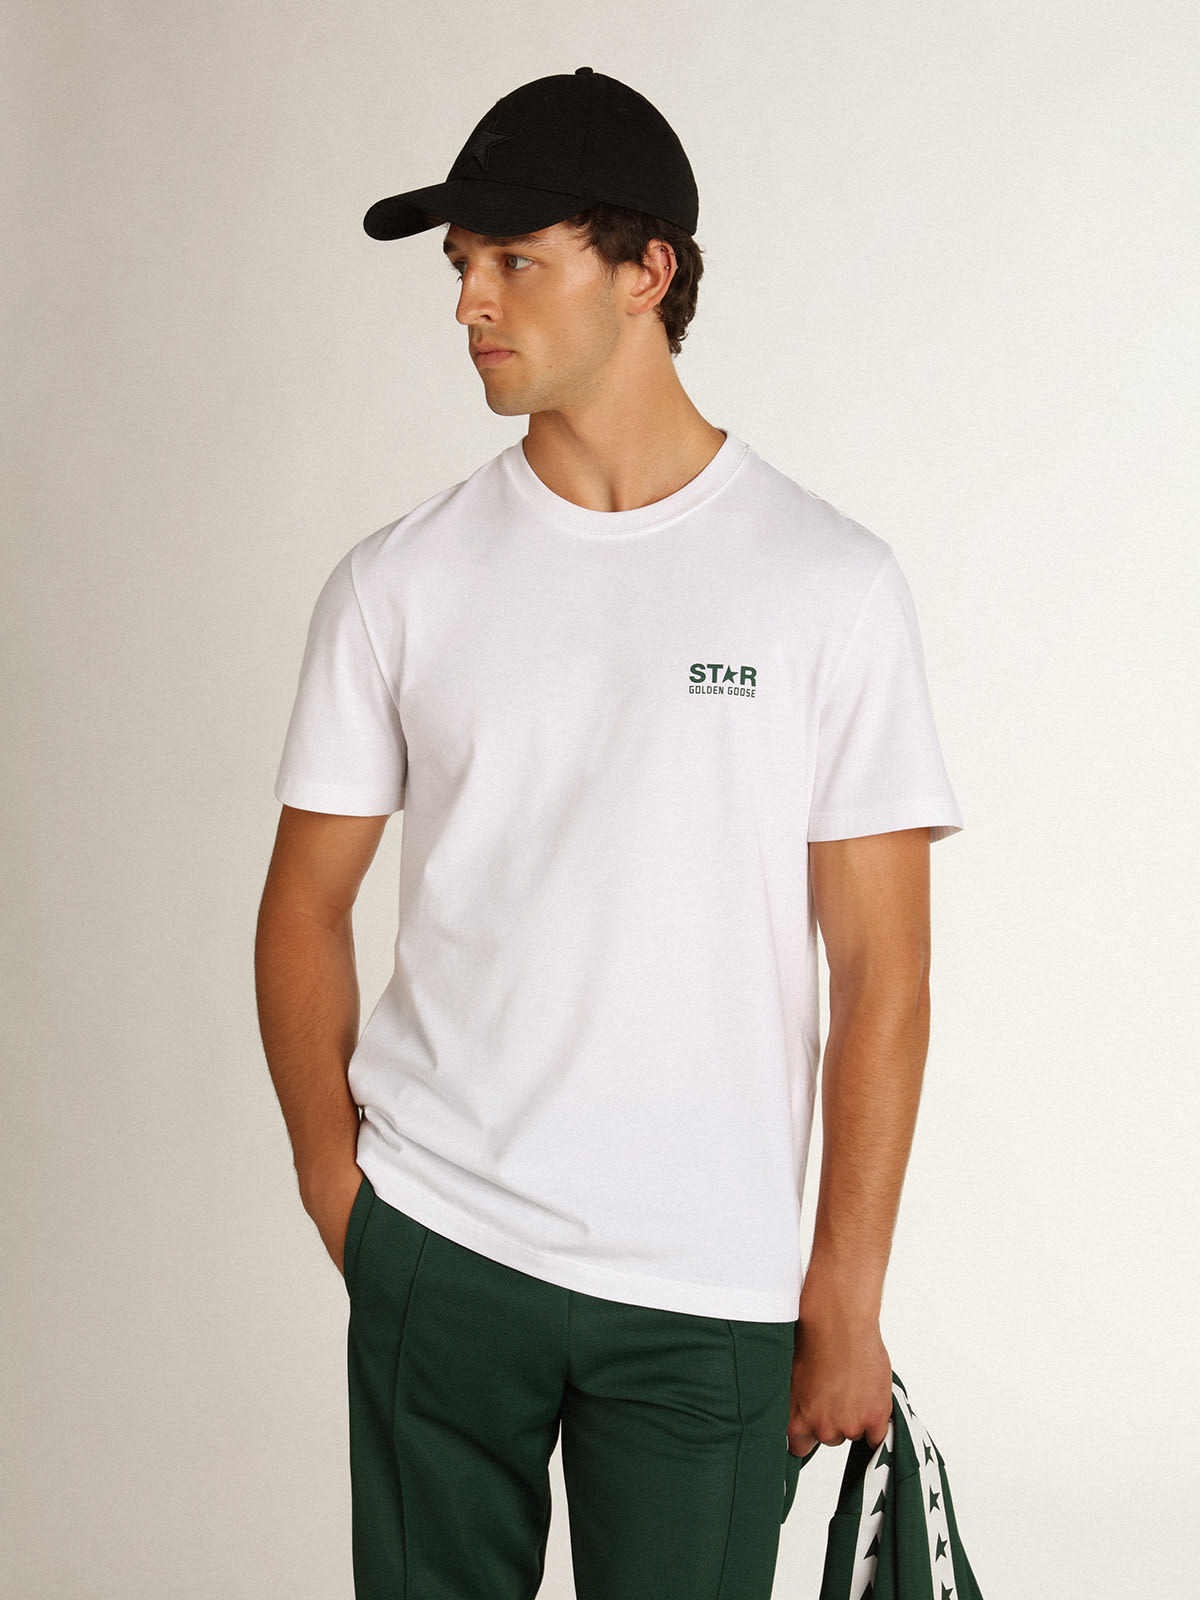 Golden Goose - T-shirt homme blanc avec logo et étoile verts contrastés in 